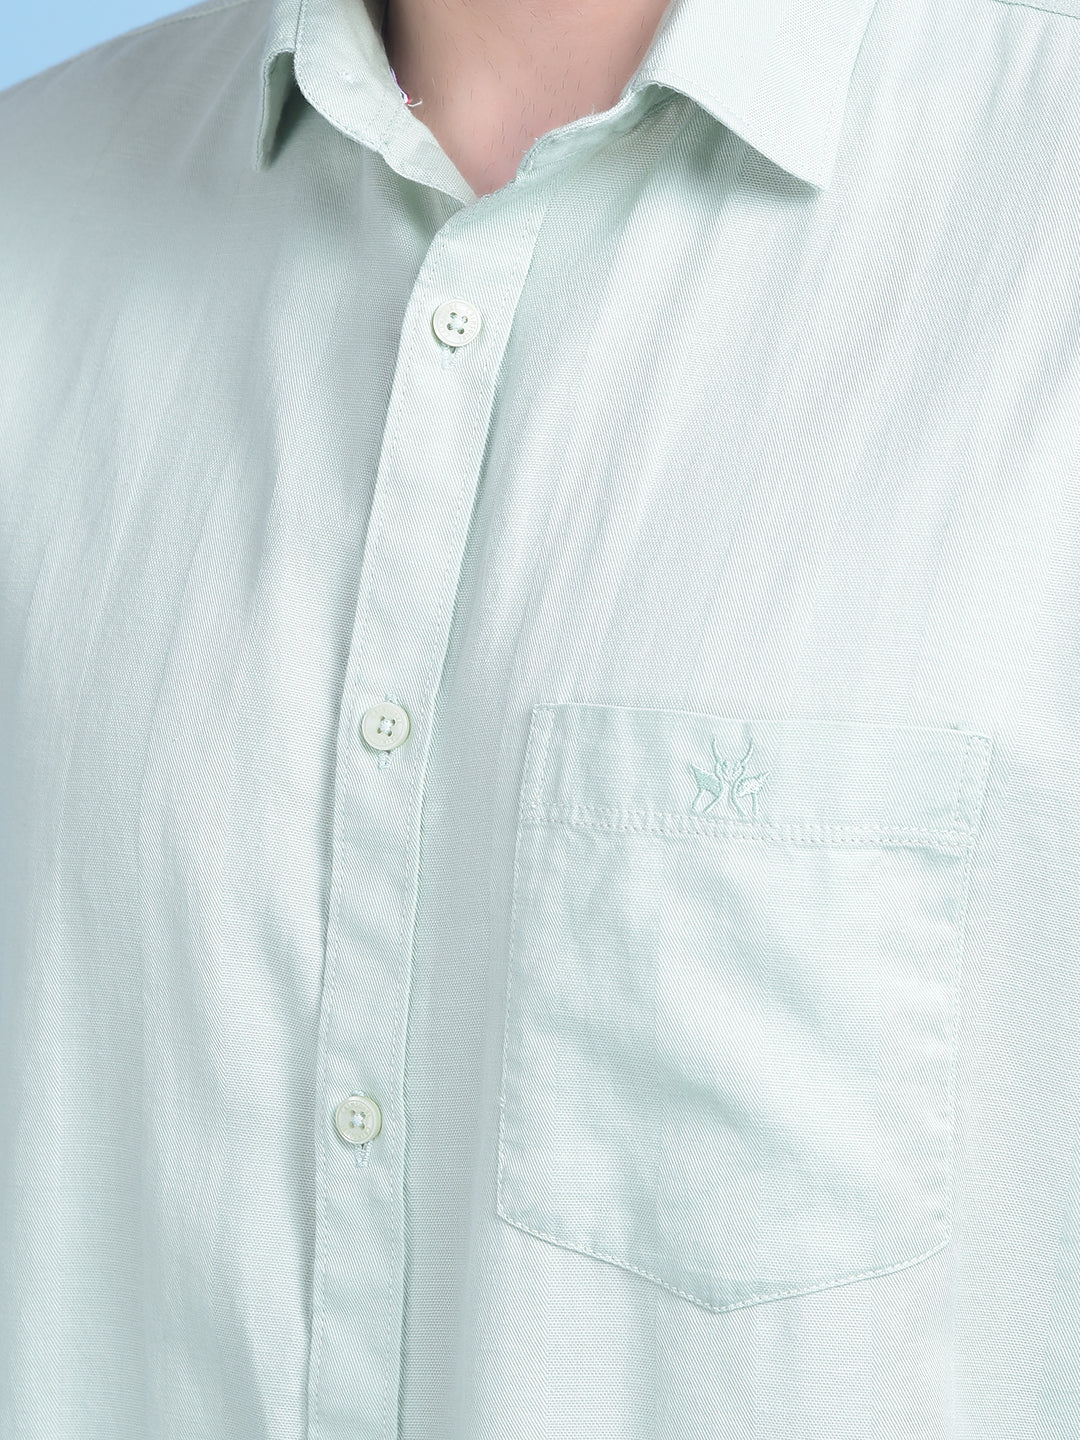 Green 100% Cotton Shirt-Men Shirts-Crimsoune Club